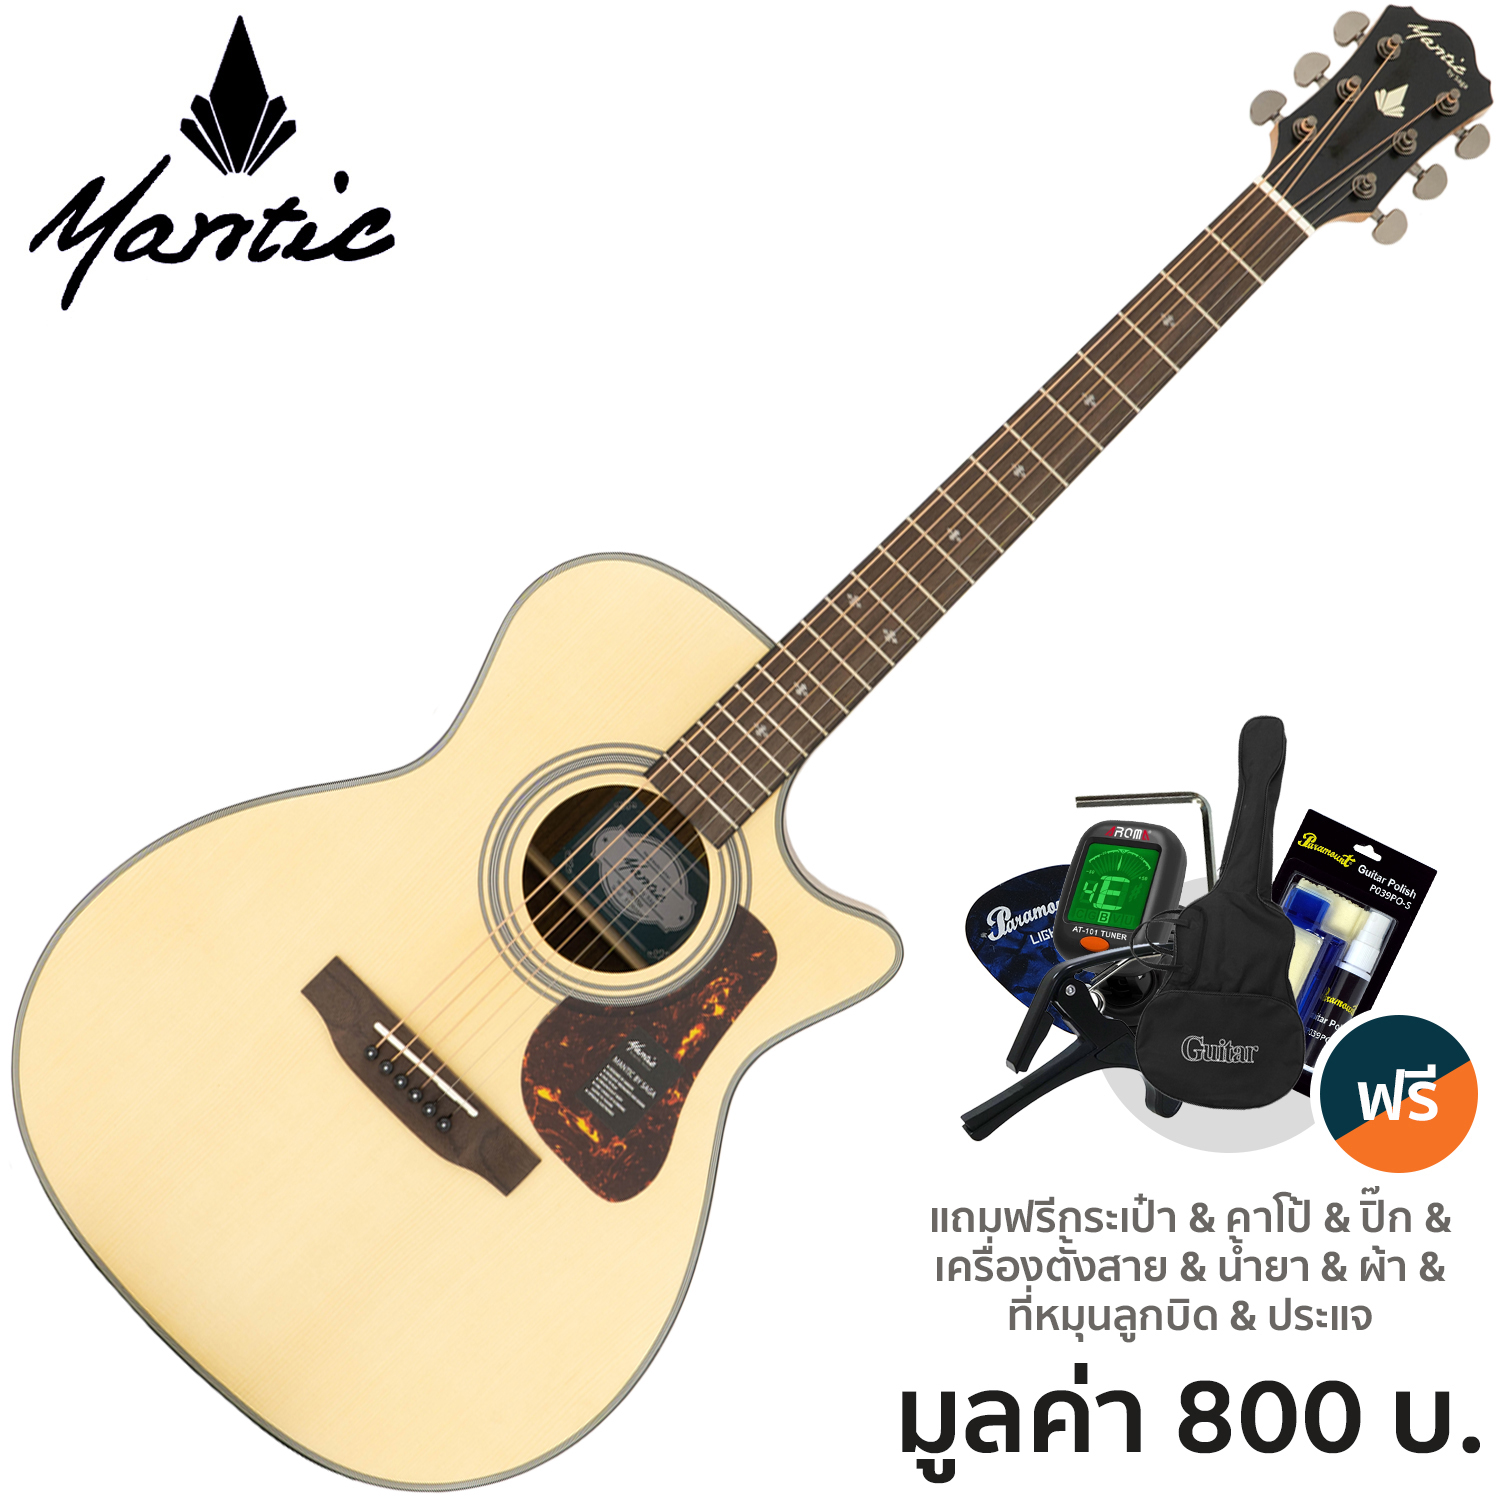 Mantic OM-370C Acoustic Guitar กีตาร์โปร่ง 40 นิ้ว ทรง OM คอเว้า ไม้สปรูซ/โอแวงกอล + แถมฟรีกระเป๋า & จูนเนอร์ & คาโป้ & ปิ๊ก & ชุดน้ำยาเช็ด